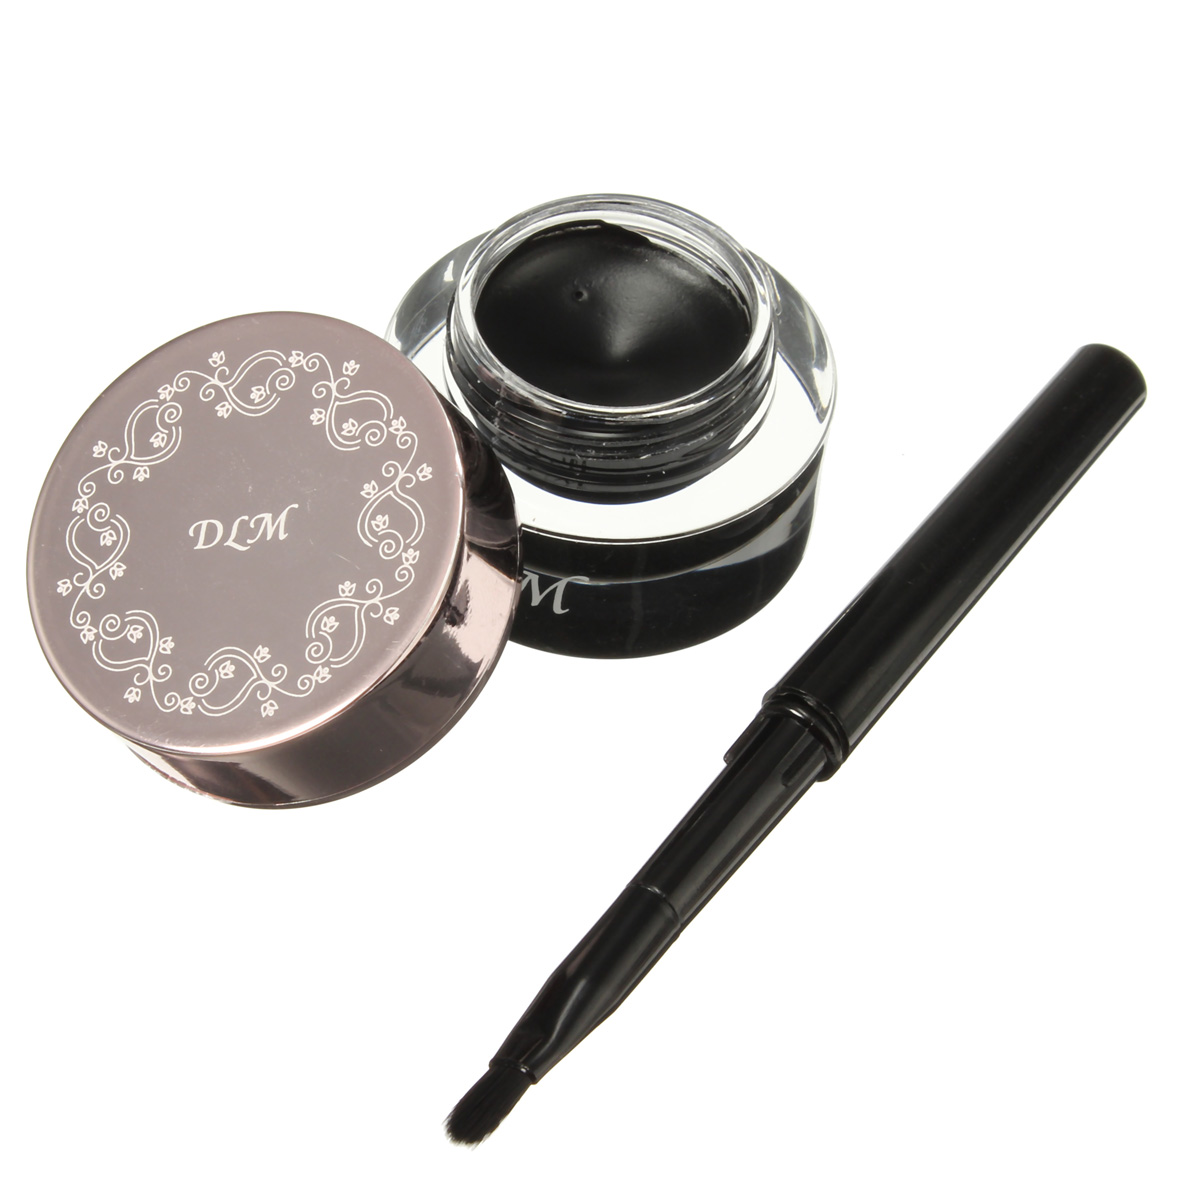 DLM Black Eyeliner Cream Long Lasting Waterproof Makeup with Brush